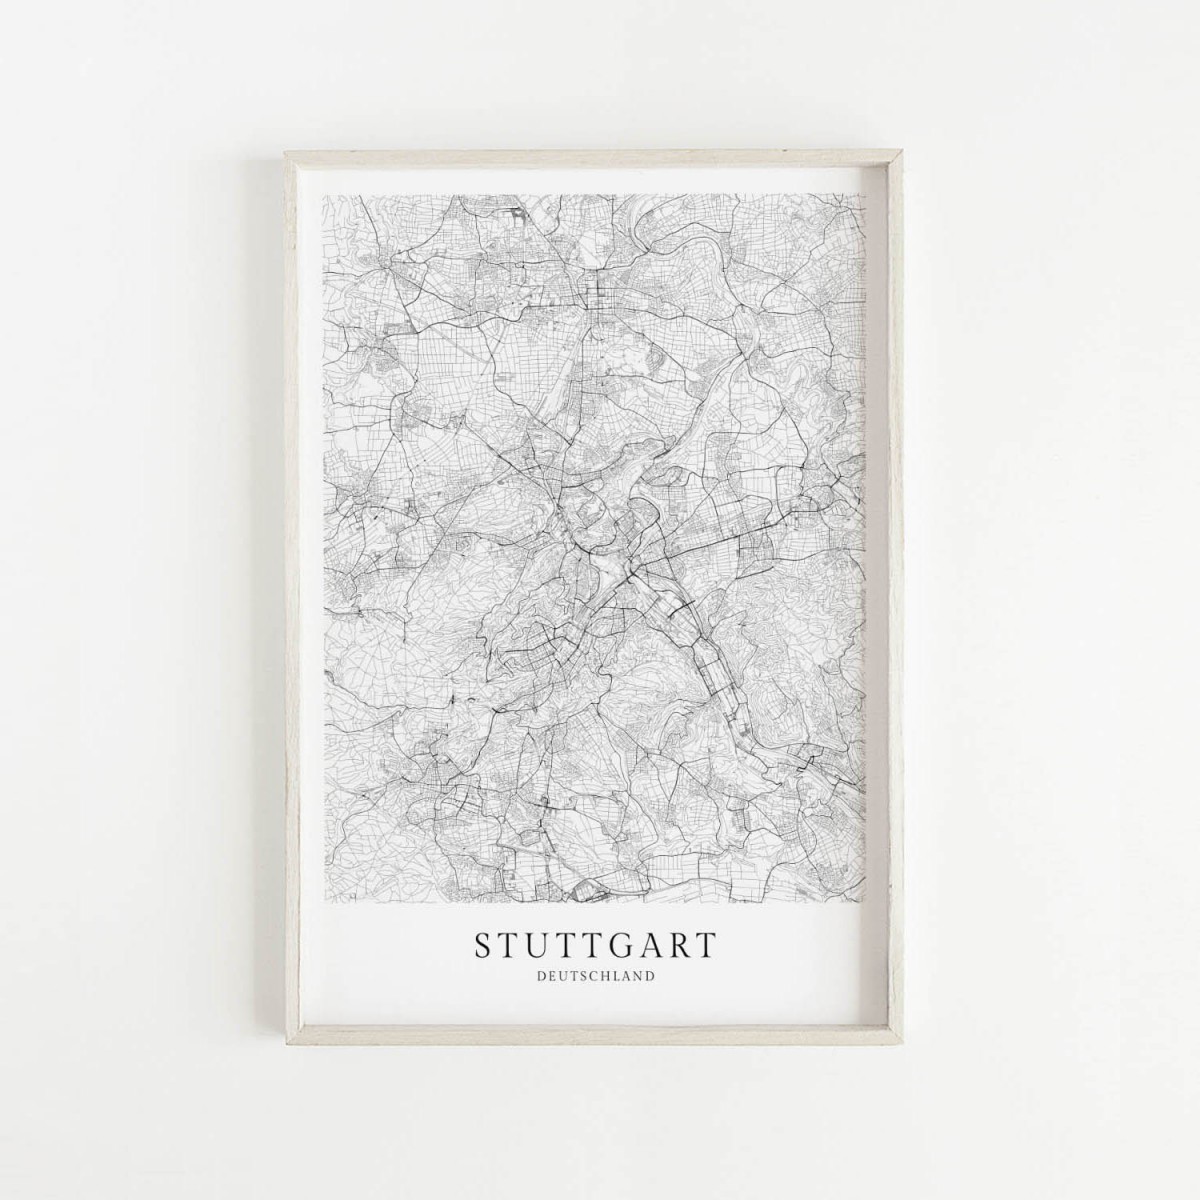 STUTTGART als hochwertiges Poster im skandinavischen Stil von Skanemarie +++ Geschenkidee